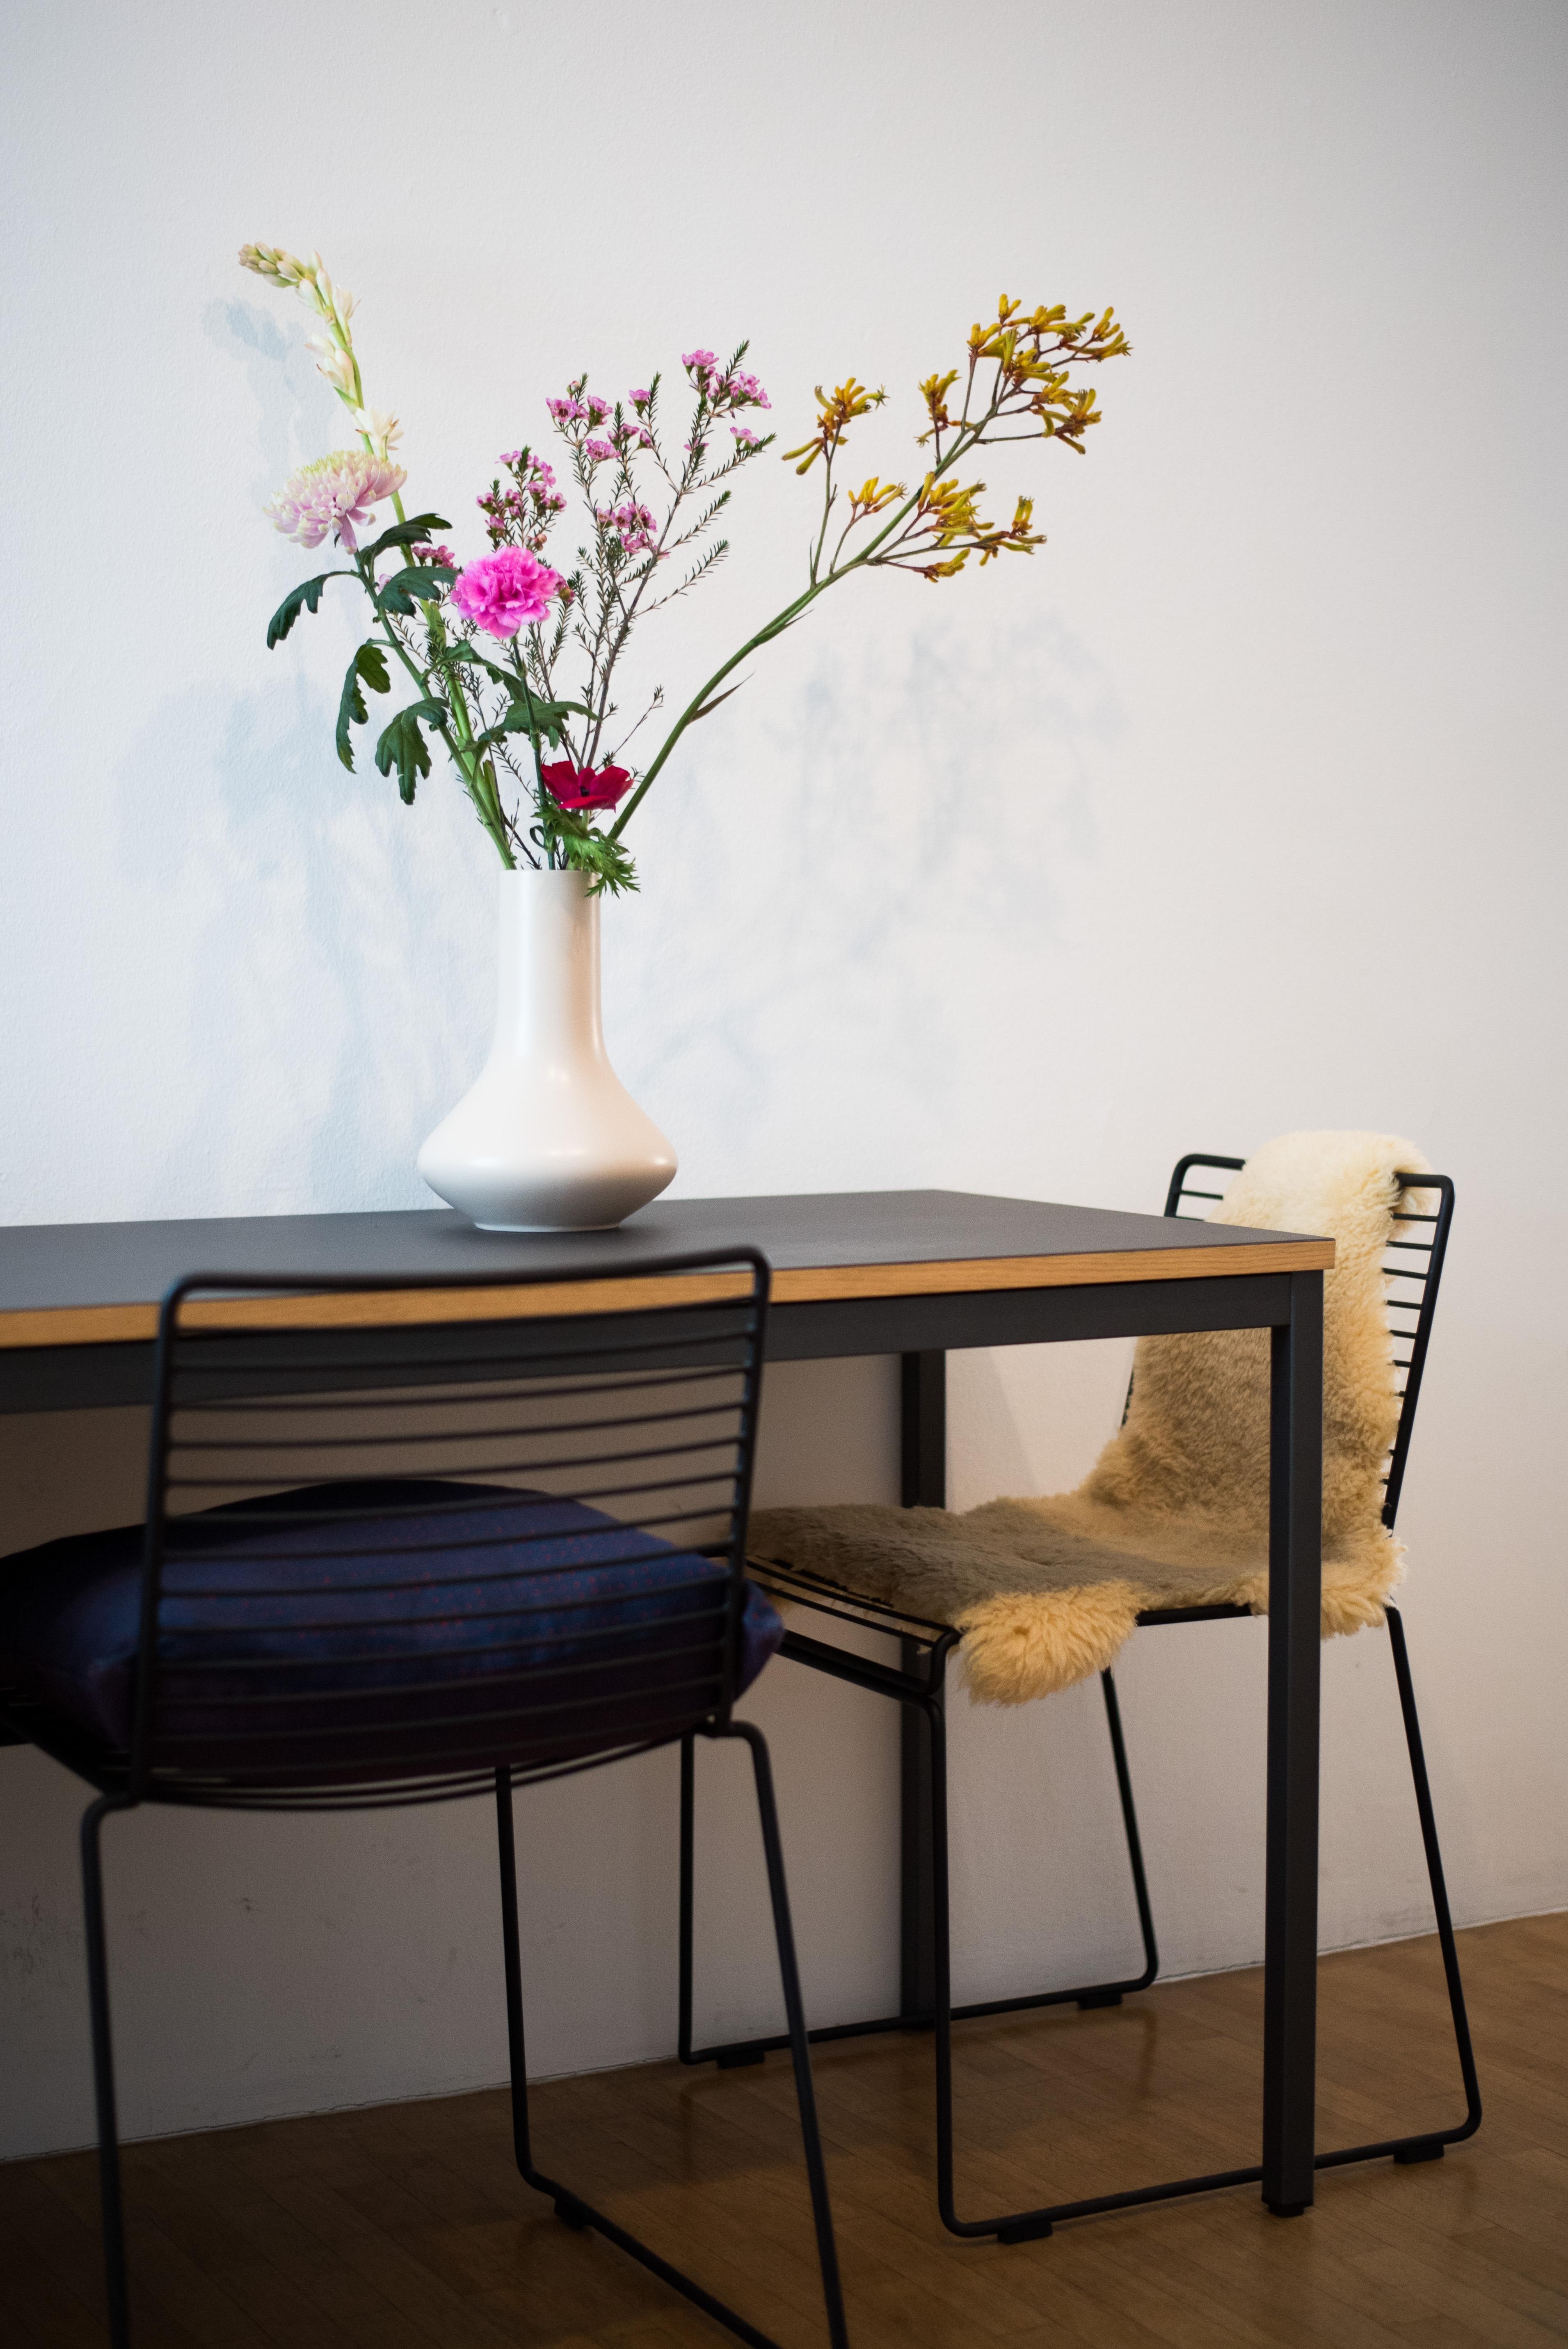 Grüße aus dem Studio! #flowers #altbau #interiorstyle #interior #hay